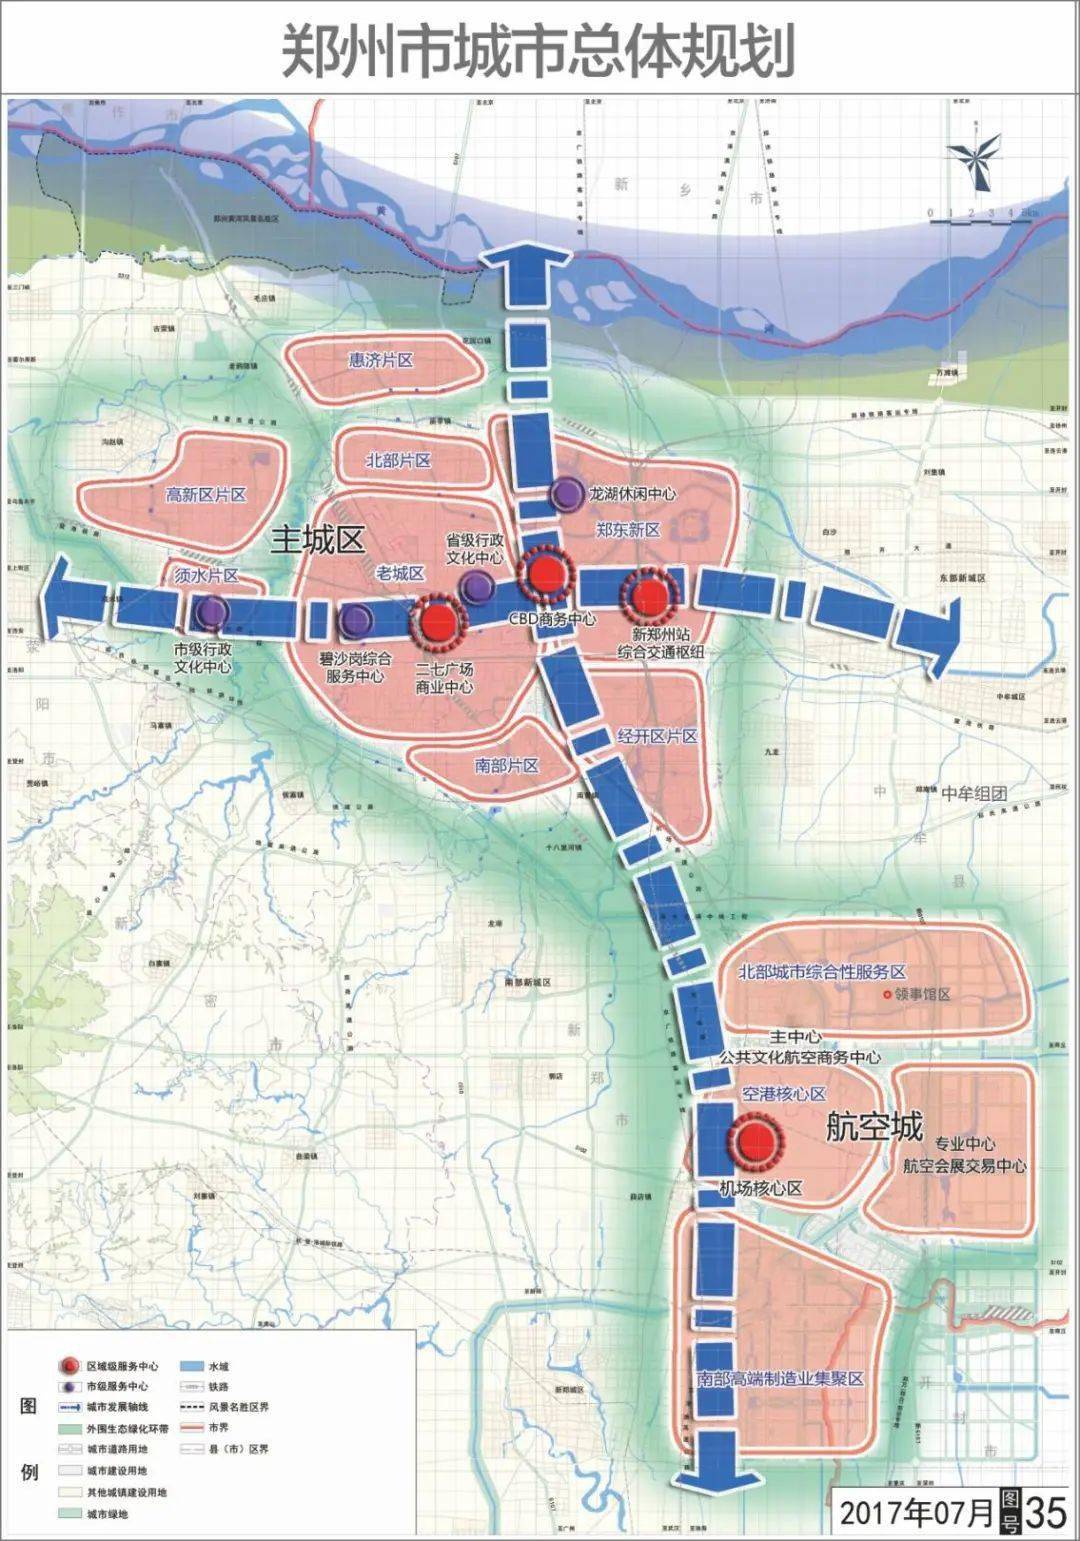 港区将要规划打造成为郑州的